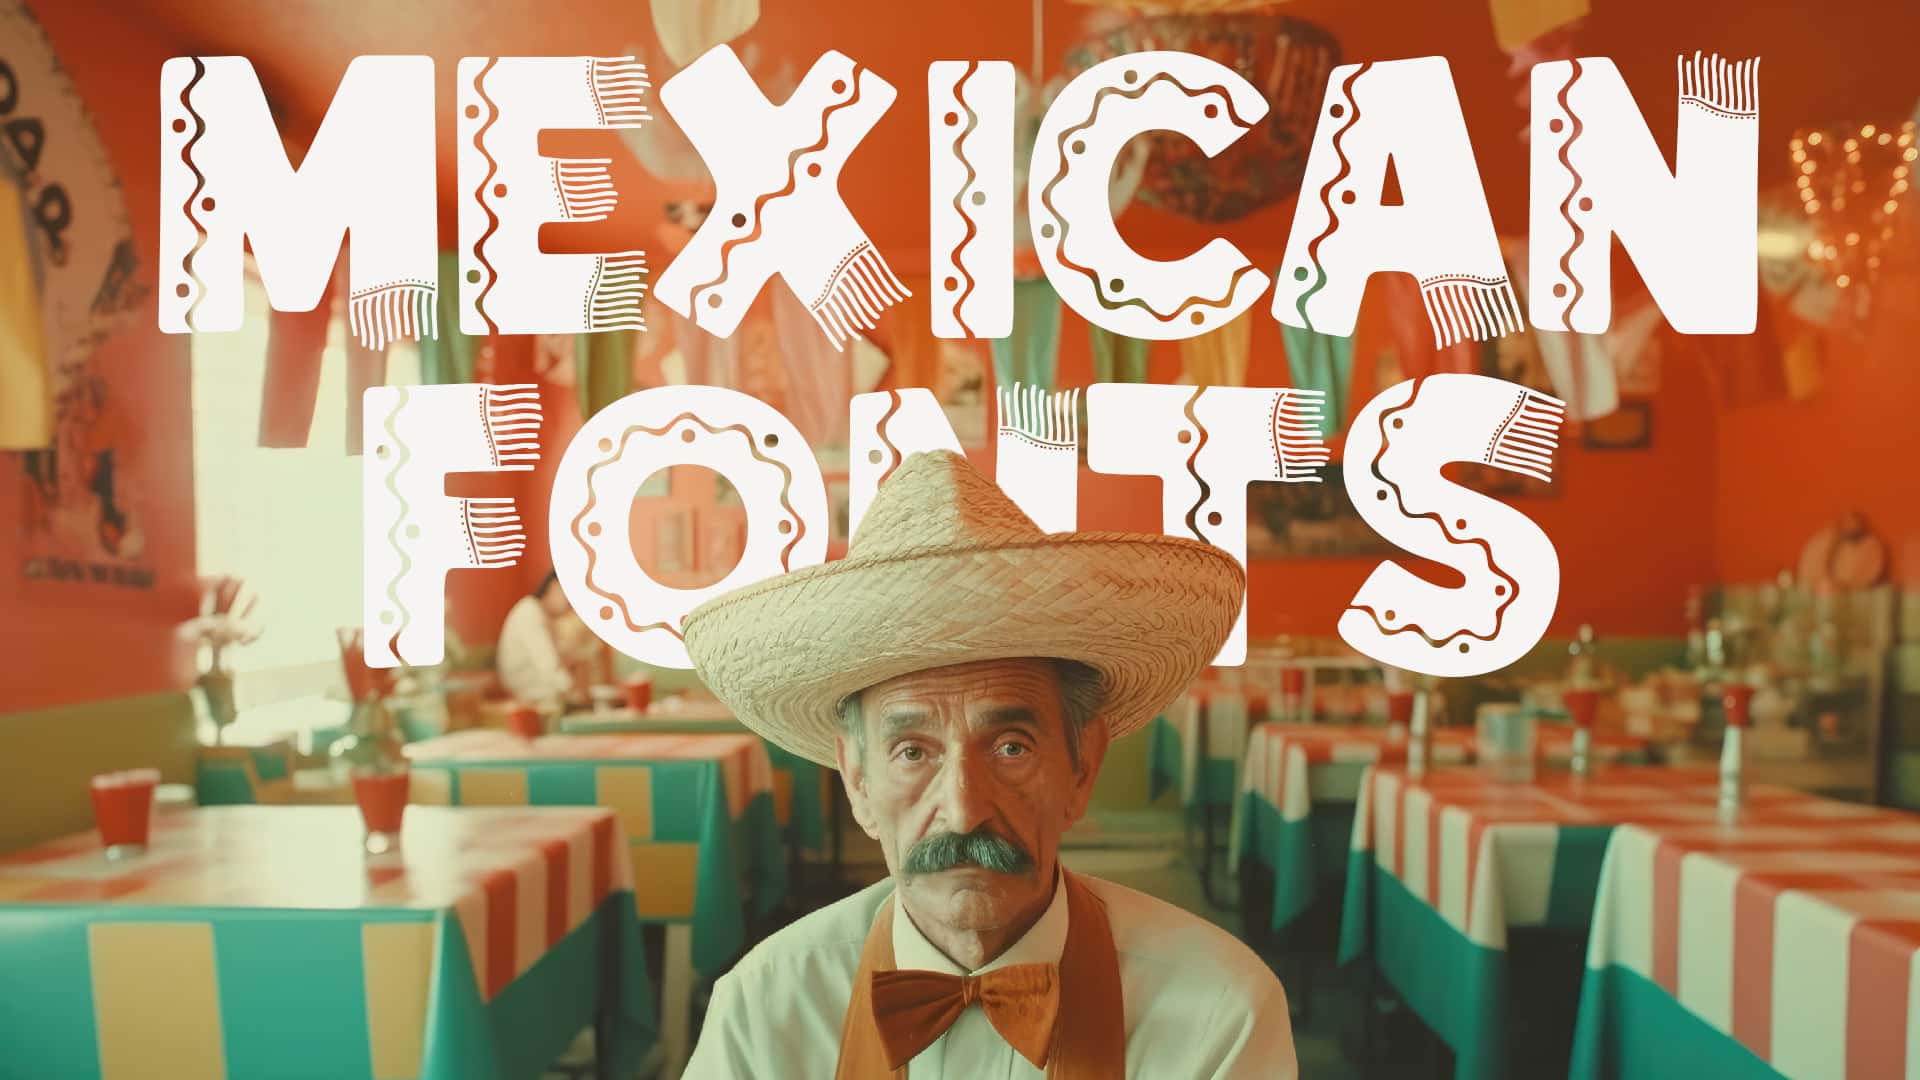 Mexican Fonts